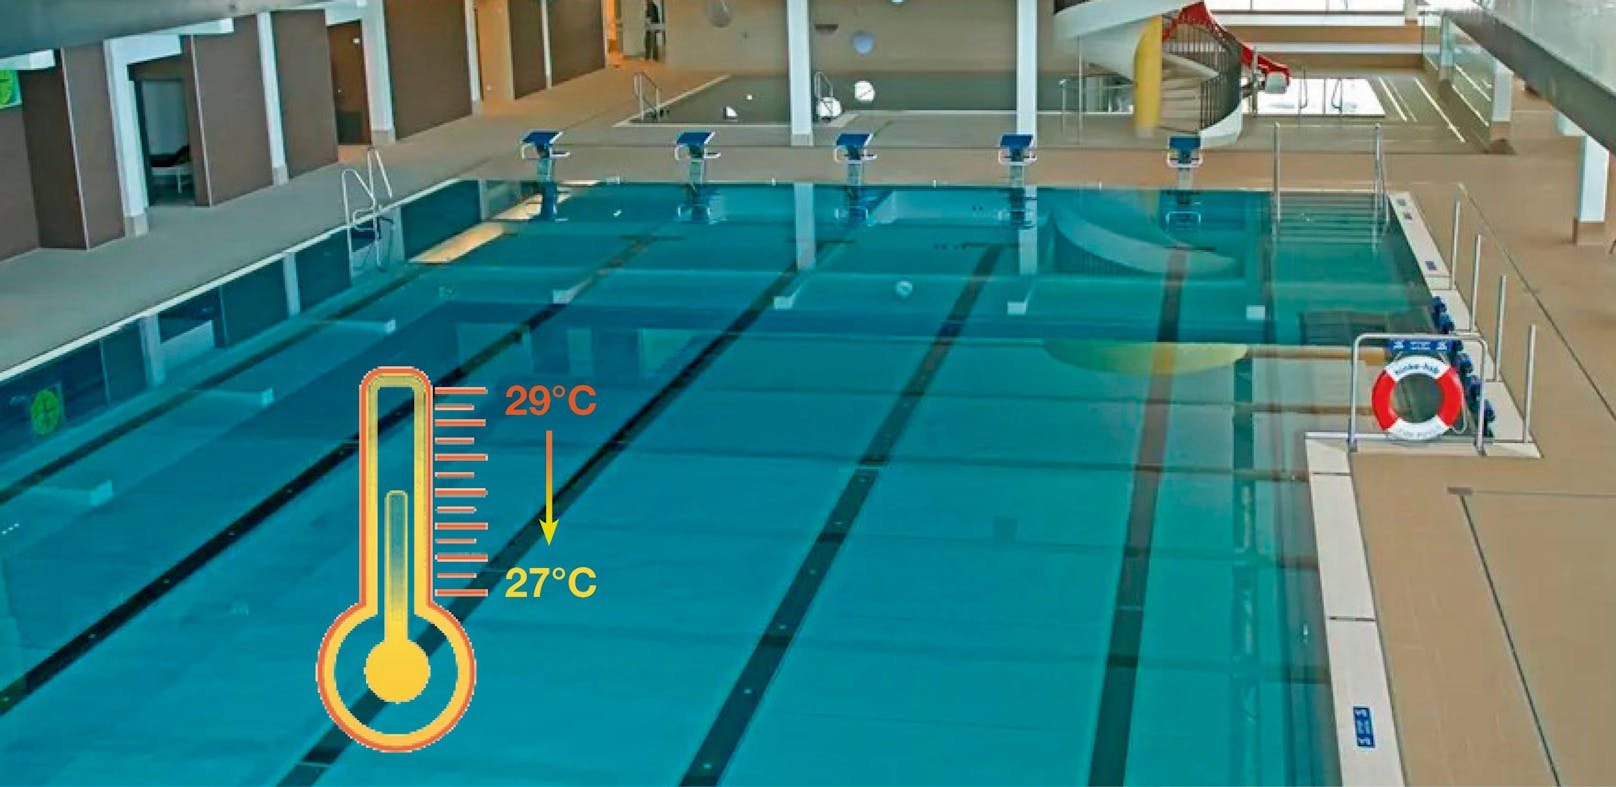 Das Sportbecken im Hallenbad in Braunau hat diesen Winter statt 29 Grad nur 27 Grad. Grund ist die Energiekrise.